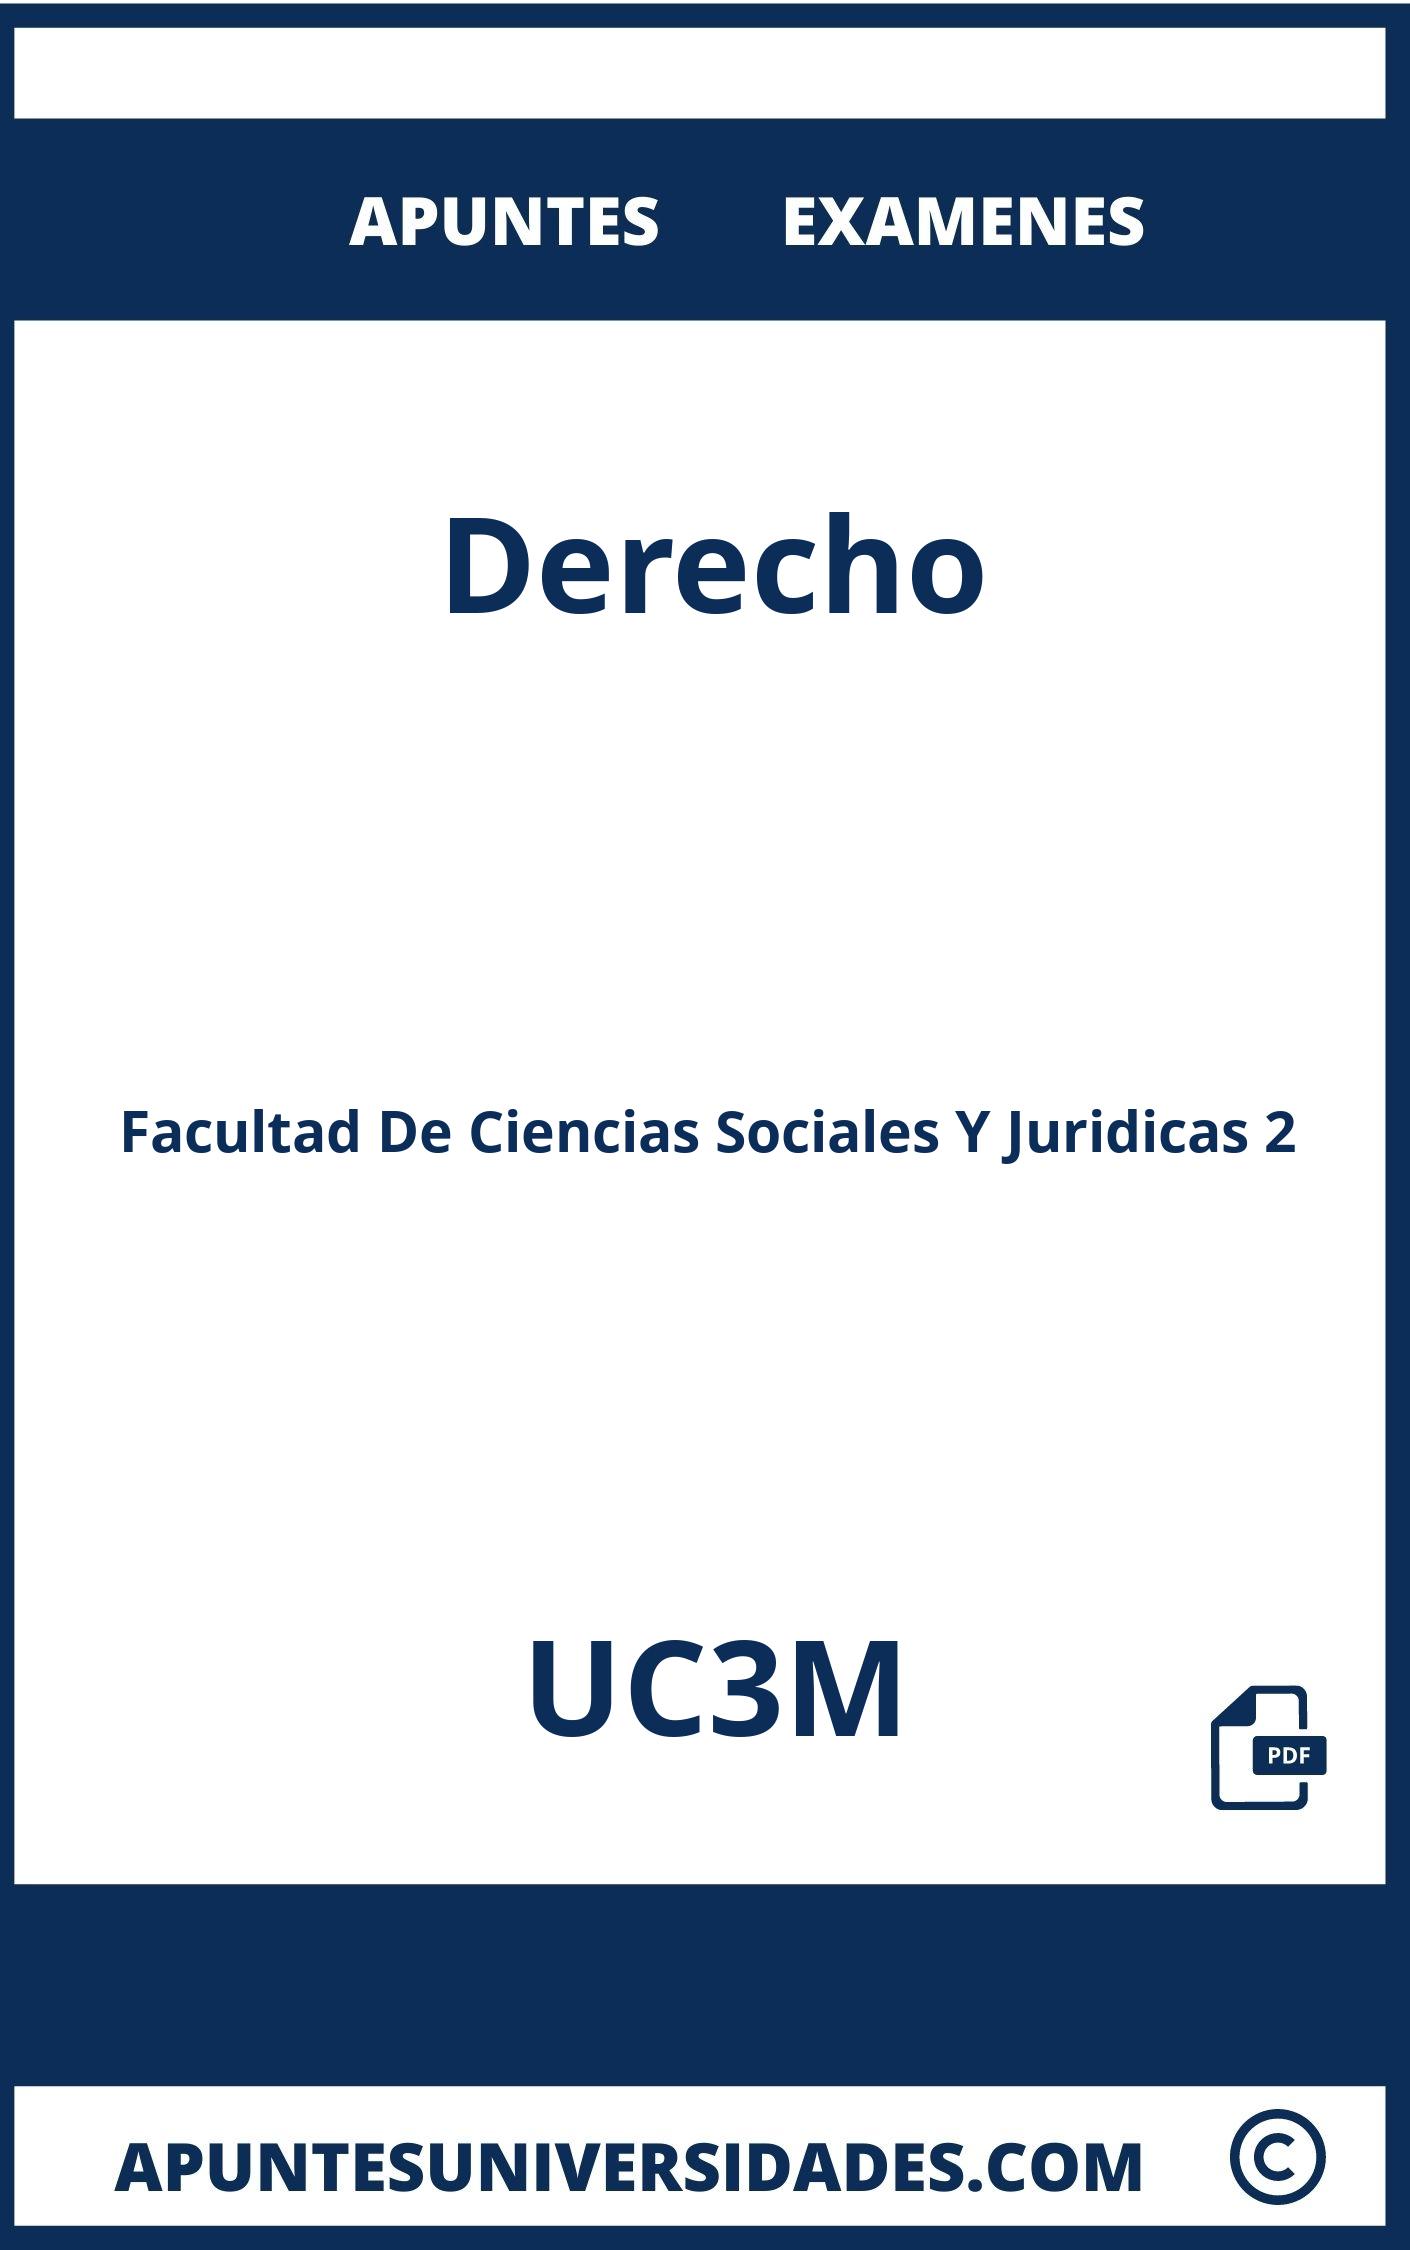 Apuntes y Examenes de Derecho UC3M